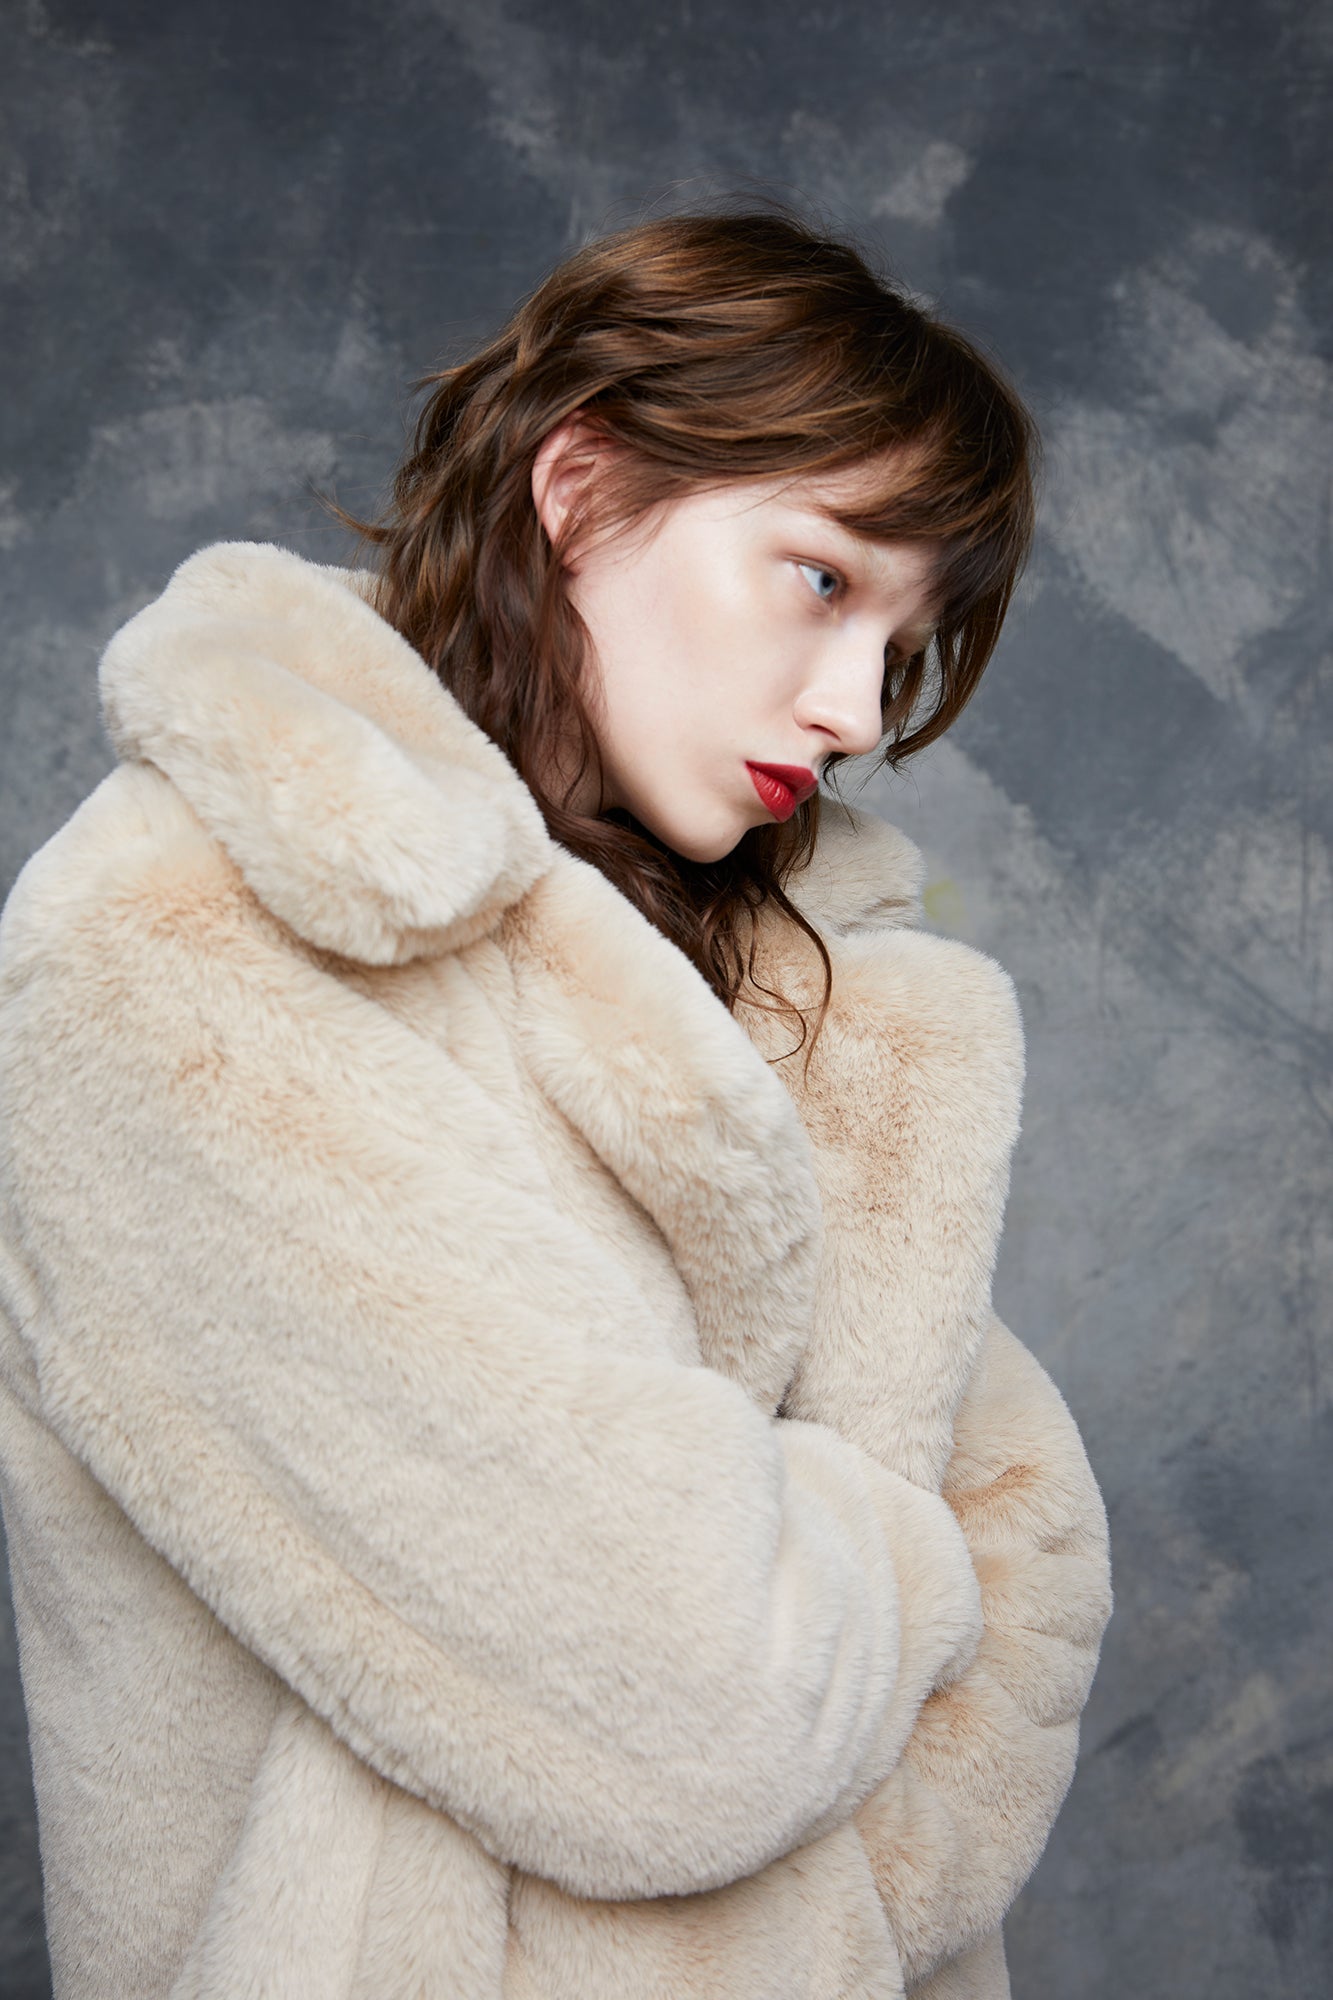 Midi fur coat with beige lapel collar